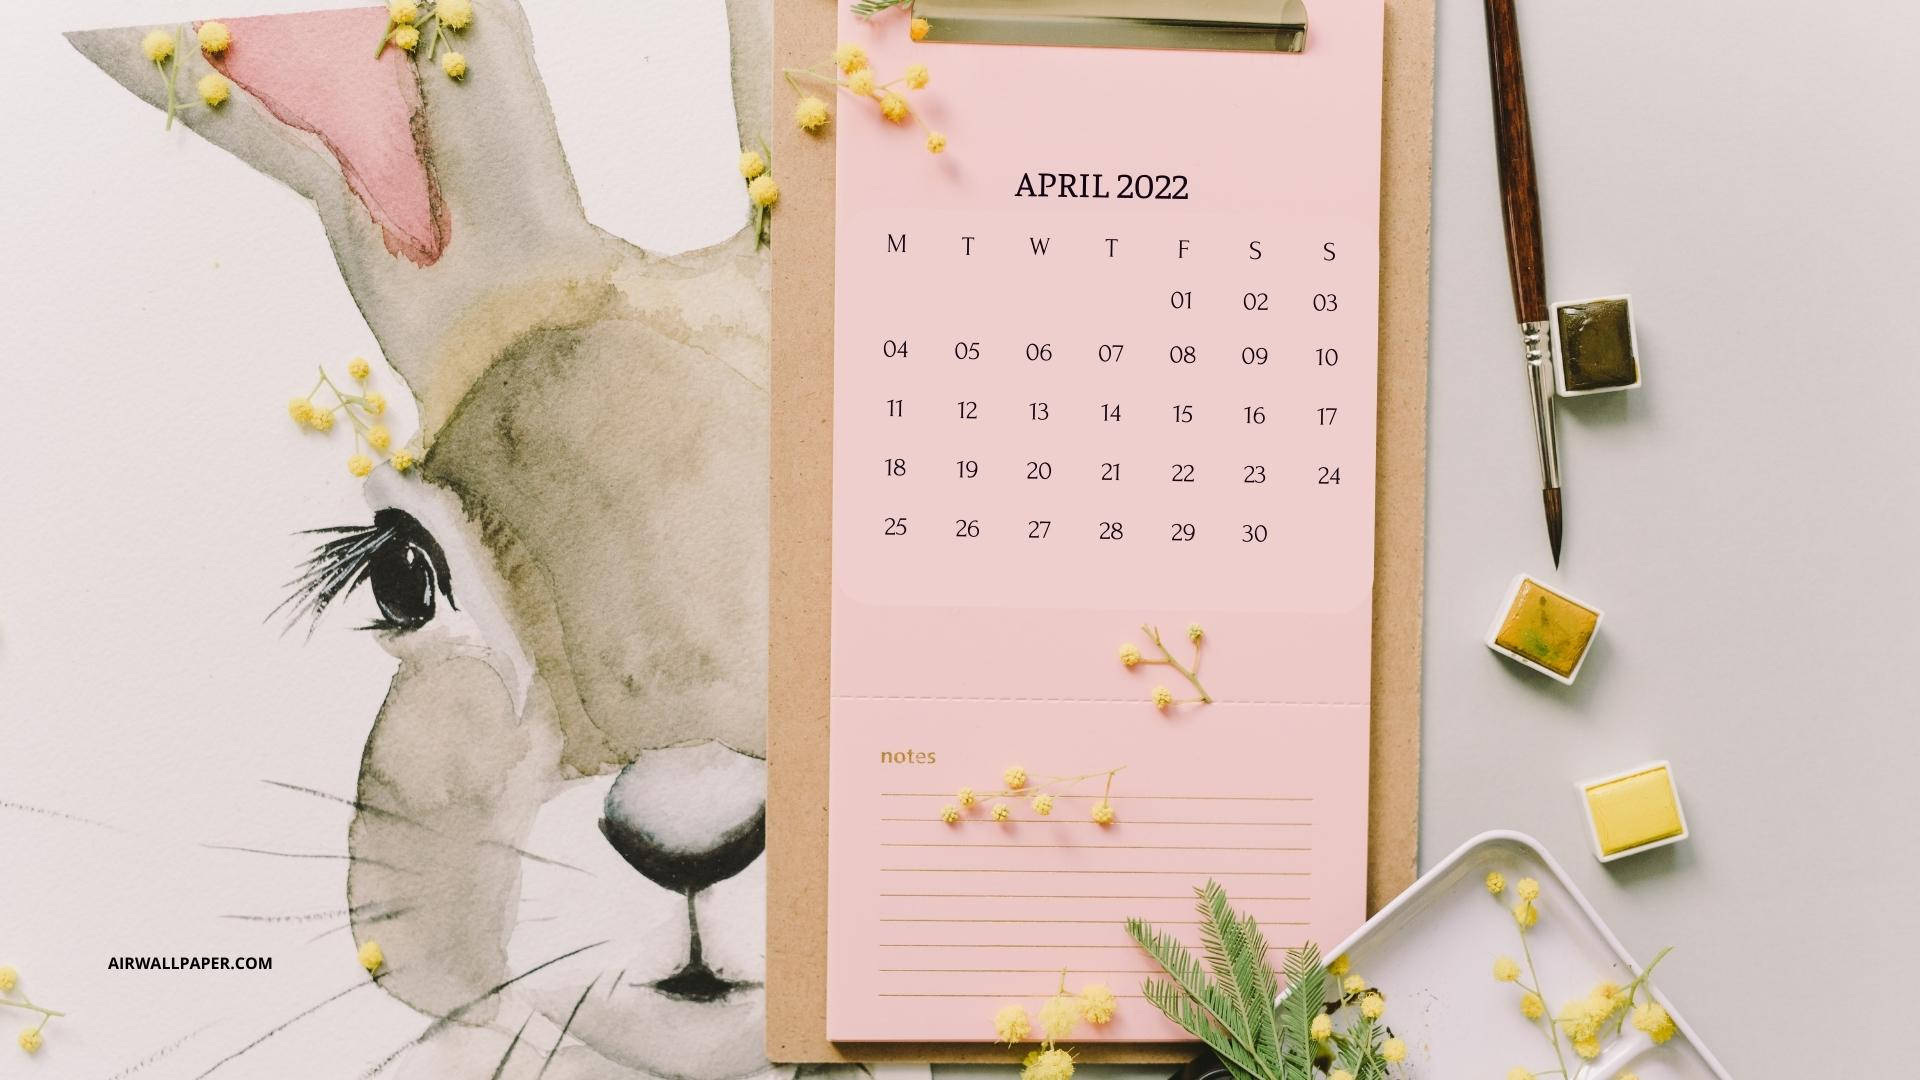 Bunny Art Clipboard April 2022 Calendar Wallpaper